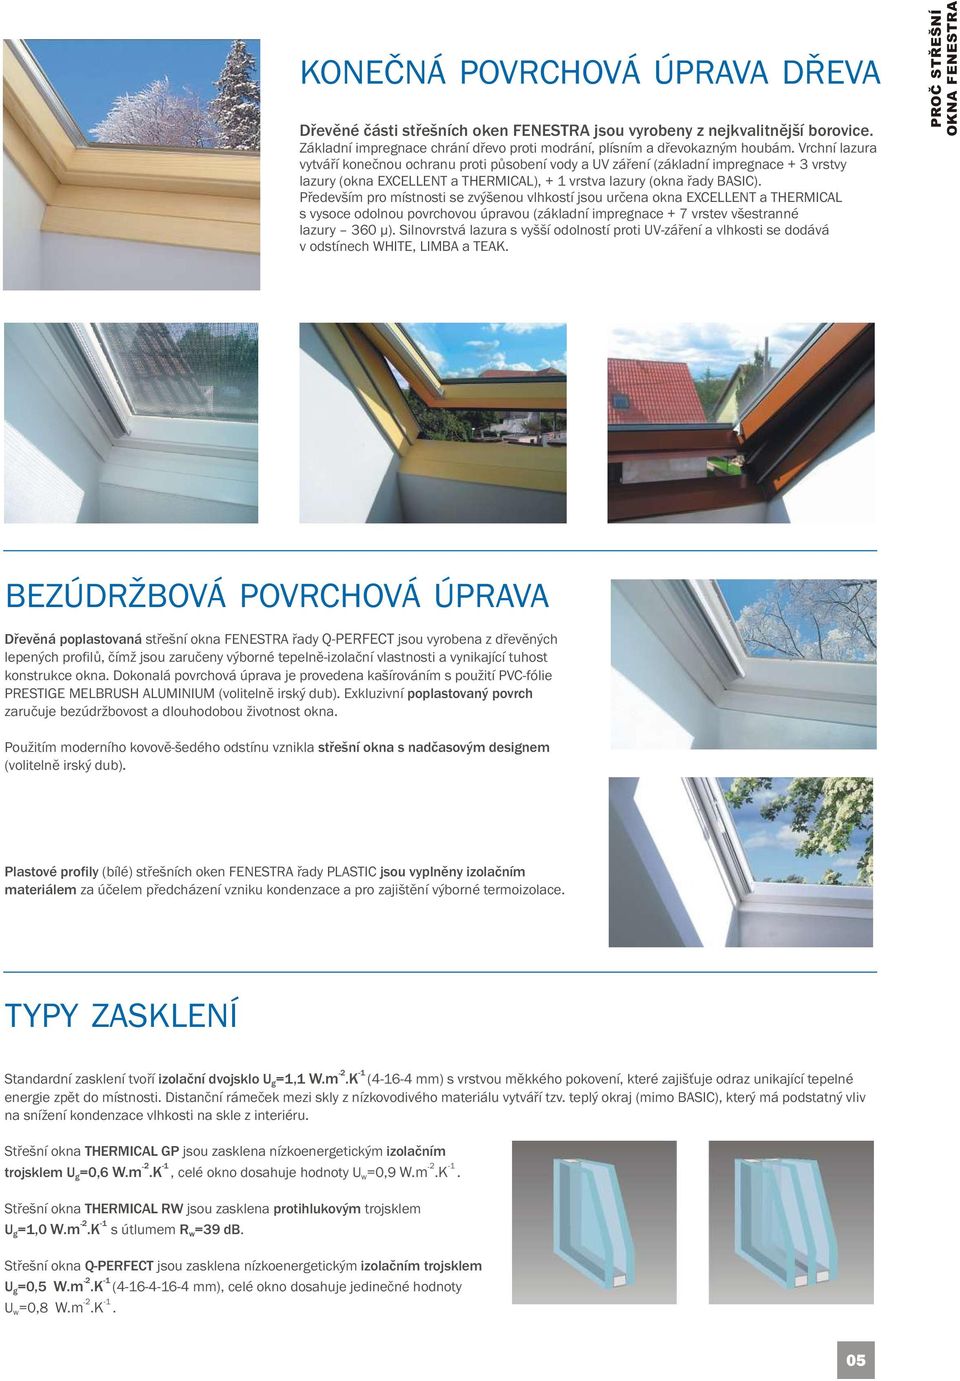 Především pro místnosti se zvýšenou vlhkostí jsou určena okna EXCELLENT a THERMICAL s vysoce odolnou povrchovou úpravou (základní impregnace + 7 vrstev všestranné lazury 360 µ).